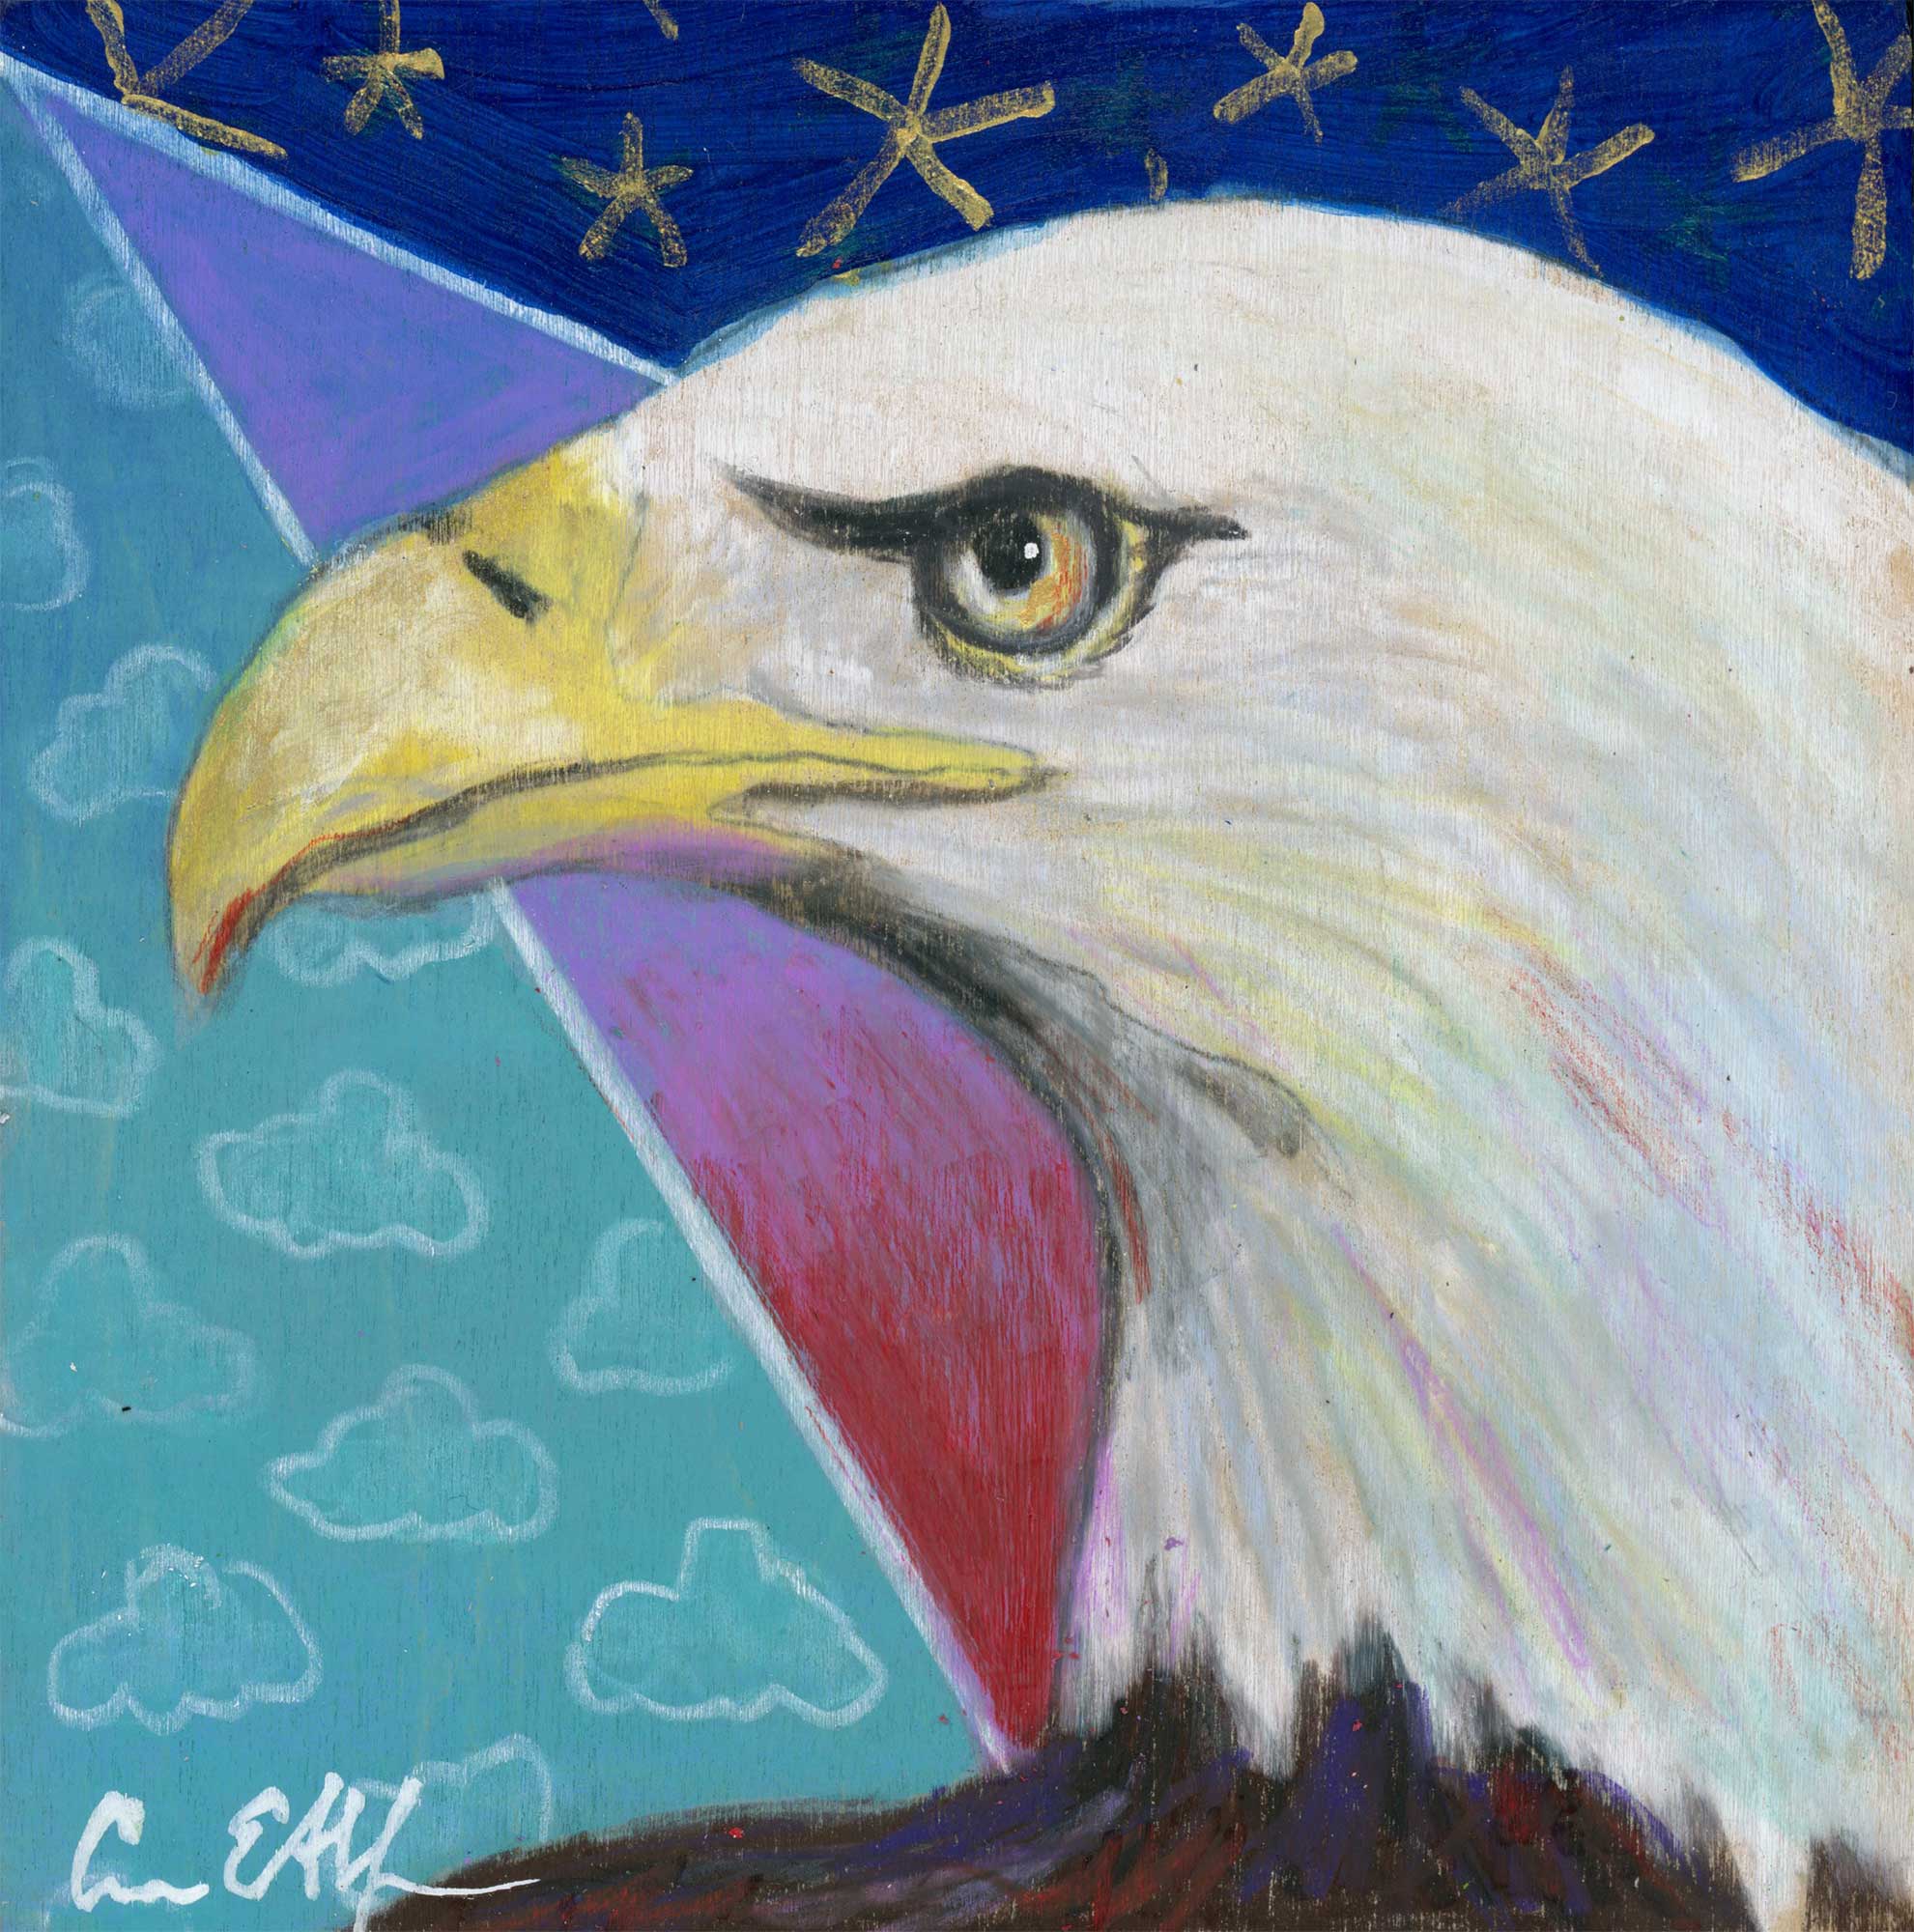 SOLD - "Patriotic Eagle", 4" x 4", mixed media